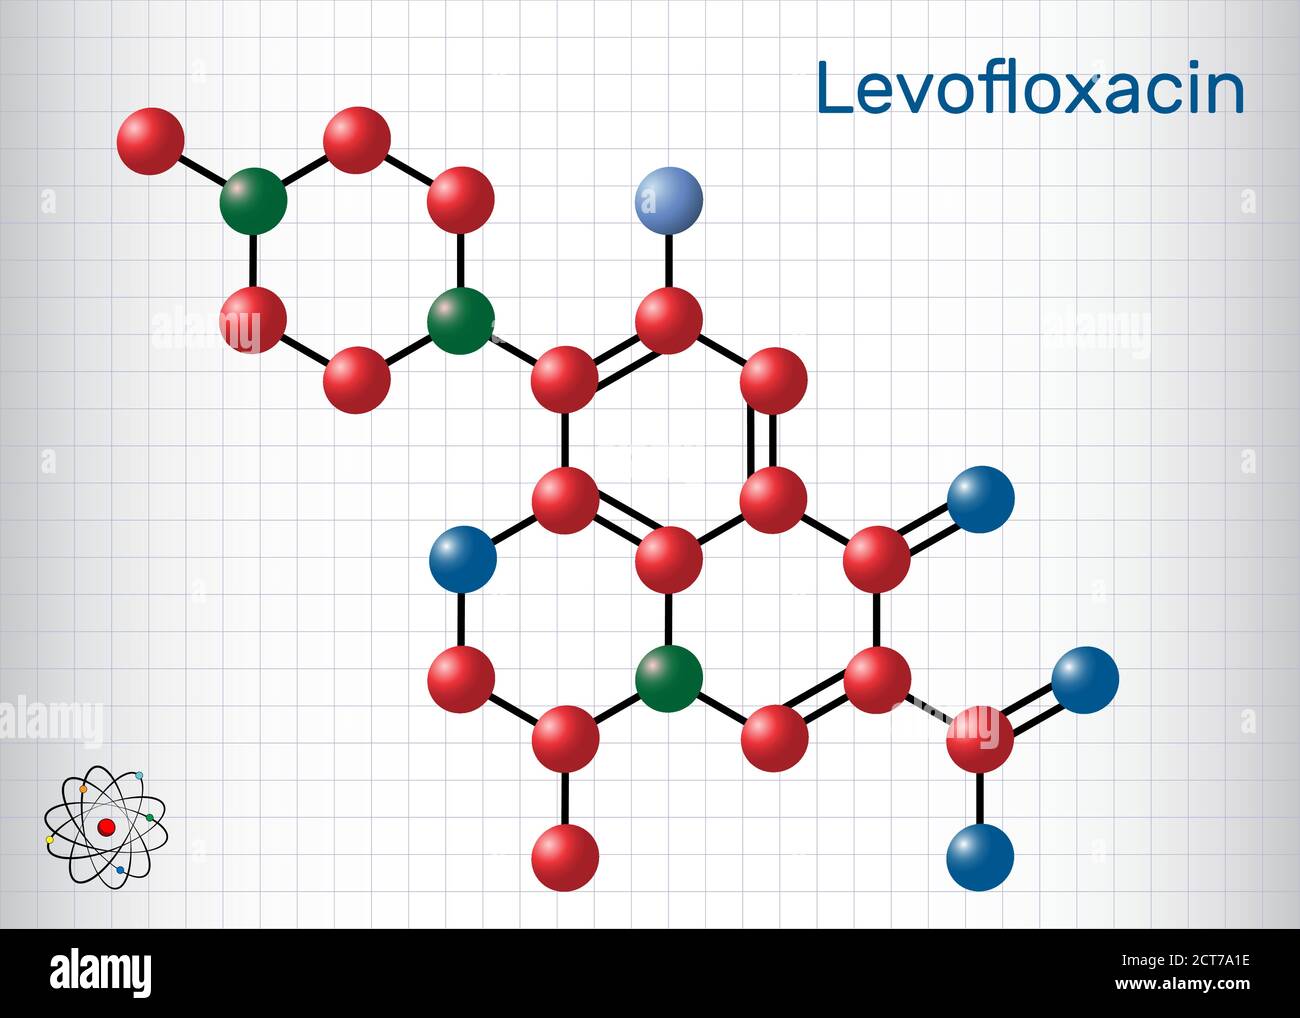 Levofloxacin, Fluorchinolon Antibiotikum Molekül. Es wird verwendet, um bakterielle Sinusitis, Lungenentzündung zu behandeln. Strukturelle chemische Formel und Molekülmodell. Stock Vektor